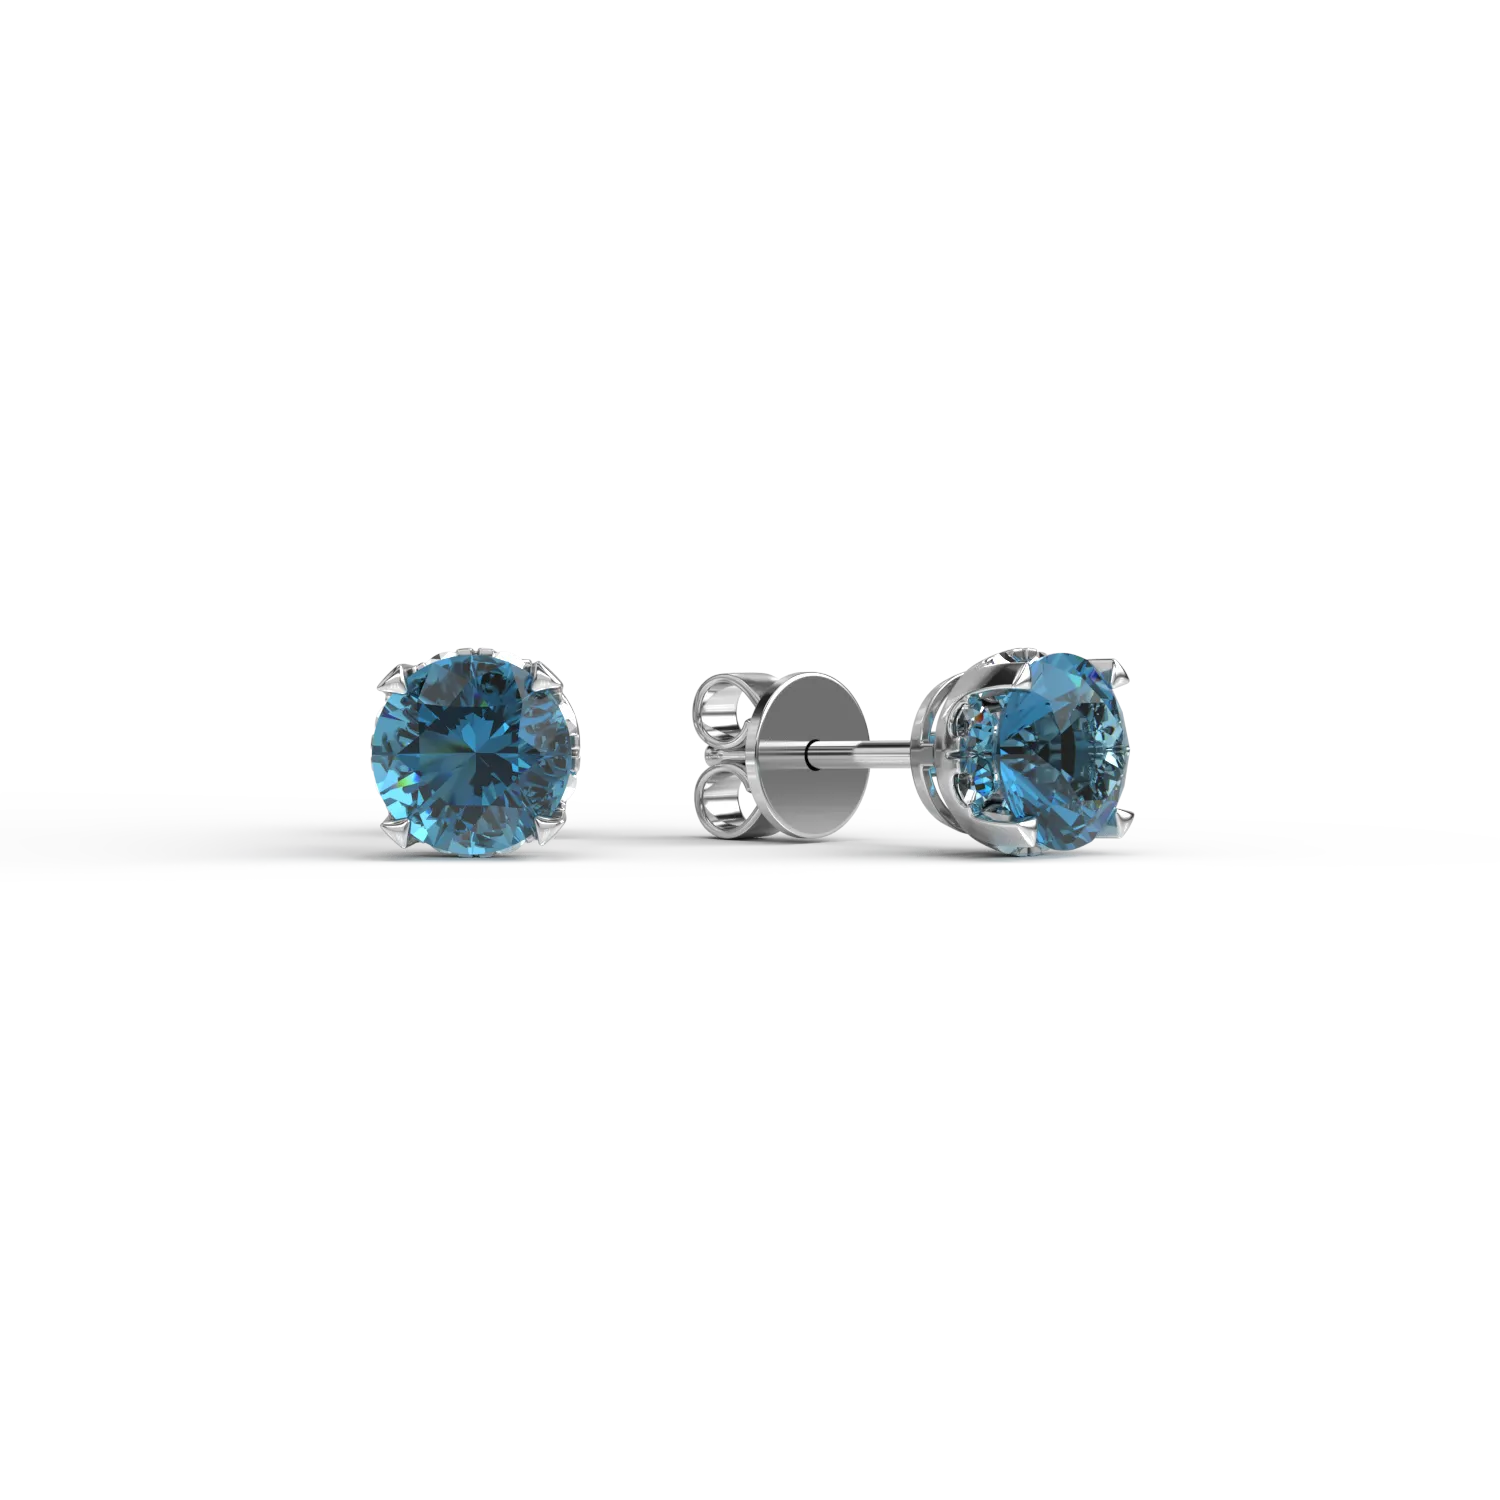 Kolczyki z białego 18K złota z niebieskimi diamentami o masie 0,79ct i bezbarwnymi diamentami o masie 0,08ct